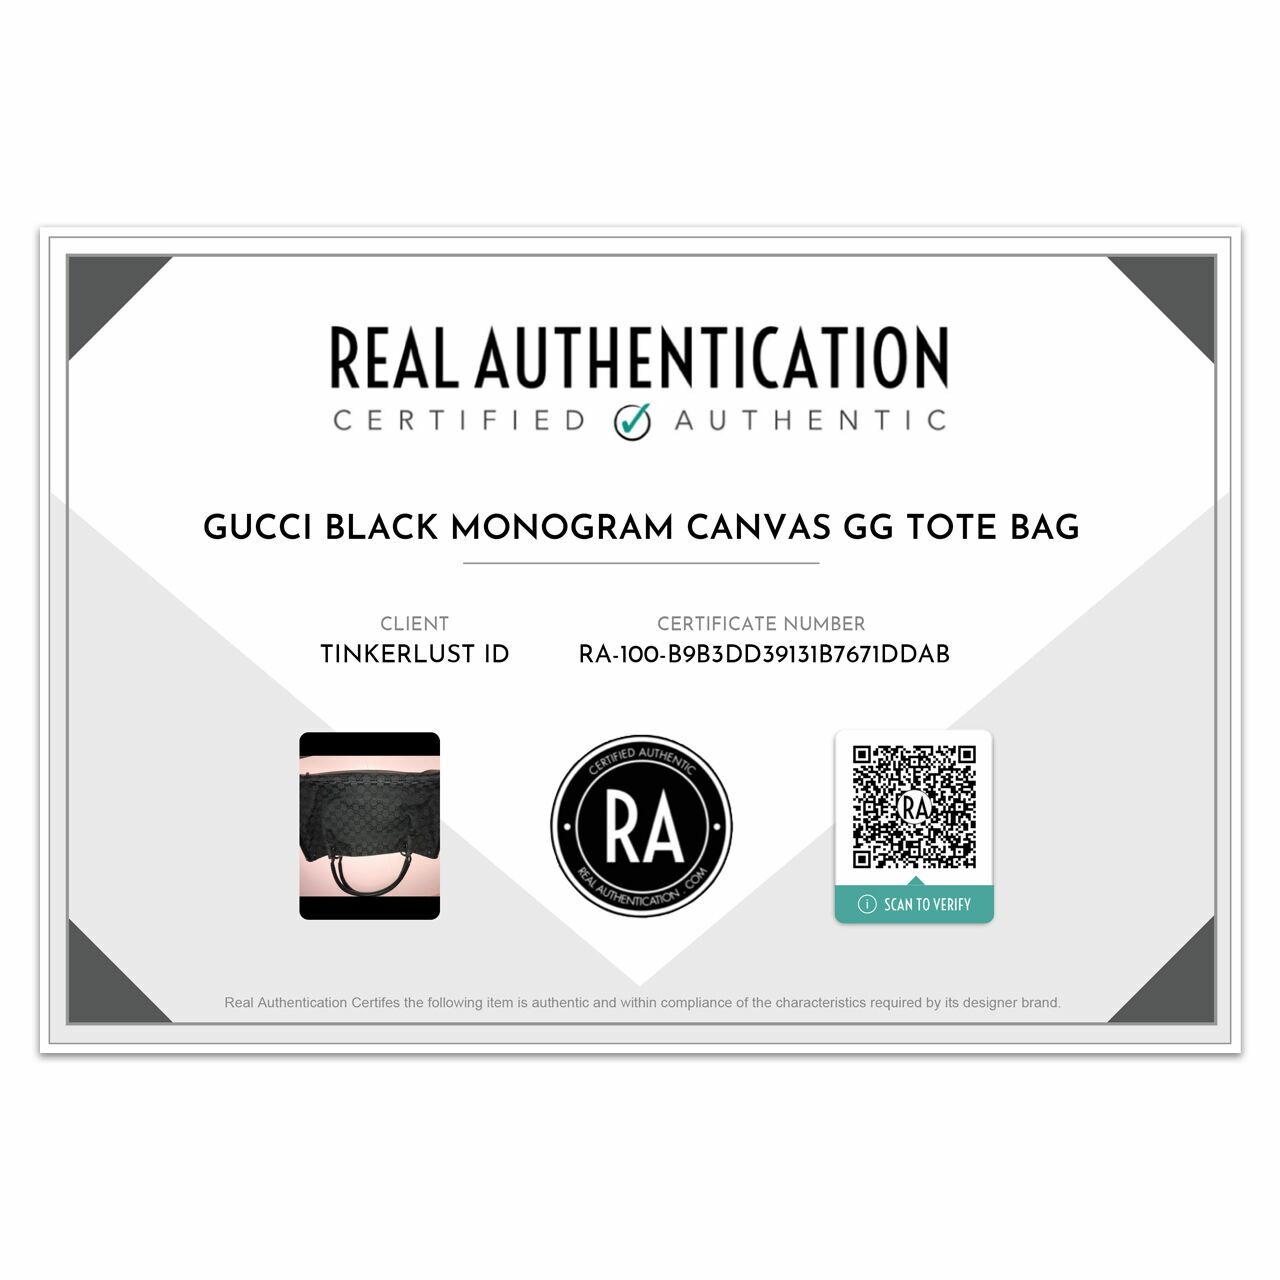 Gucci Black Monogram Canvas GG Tote Bag